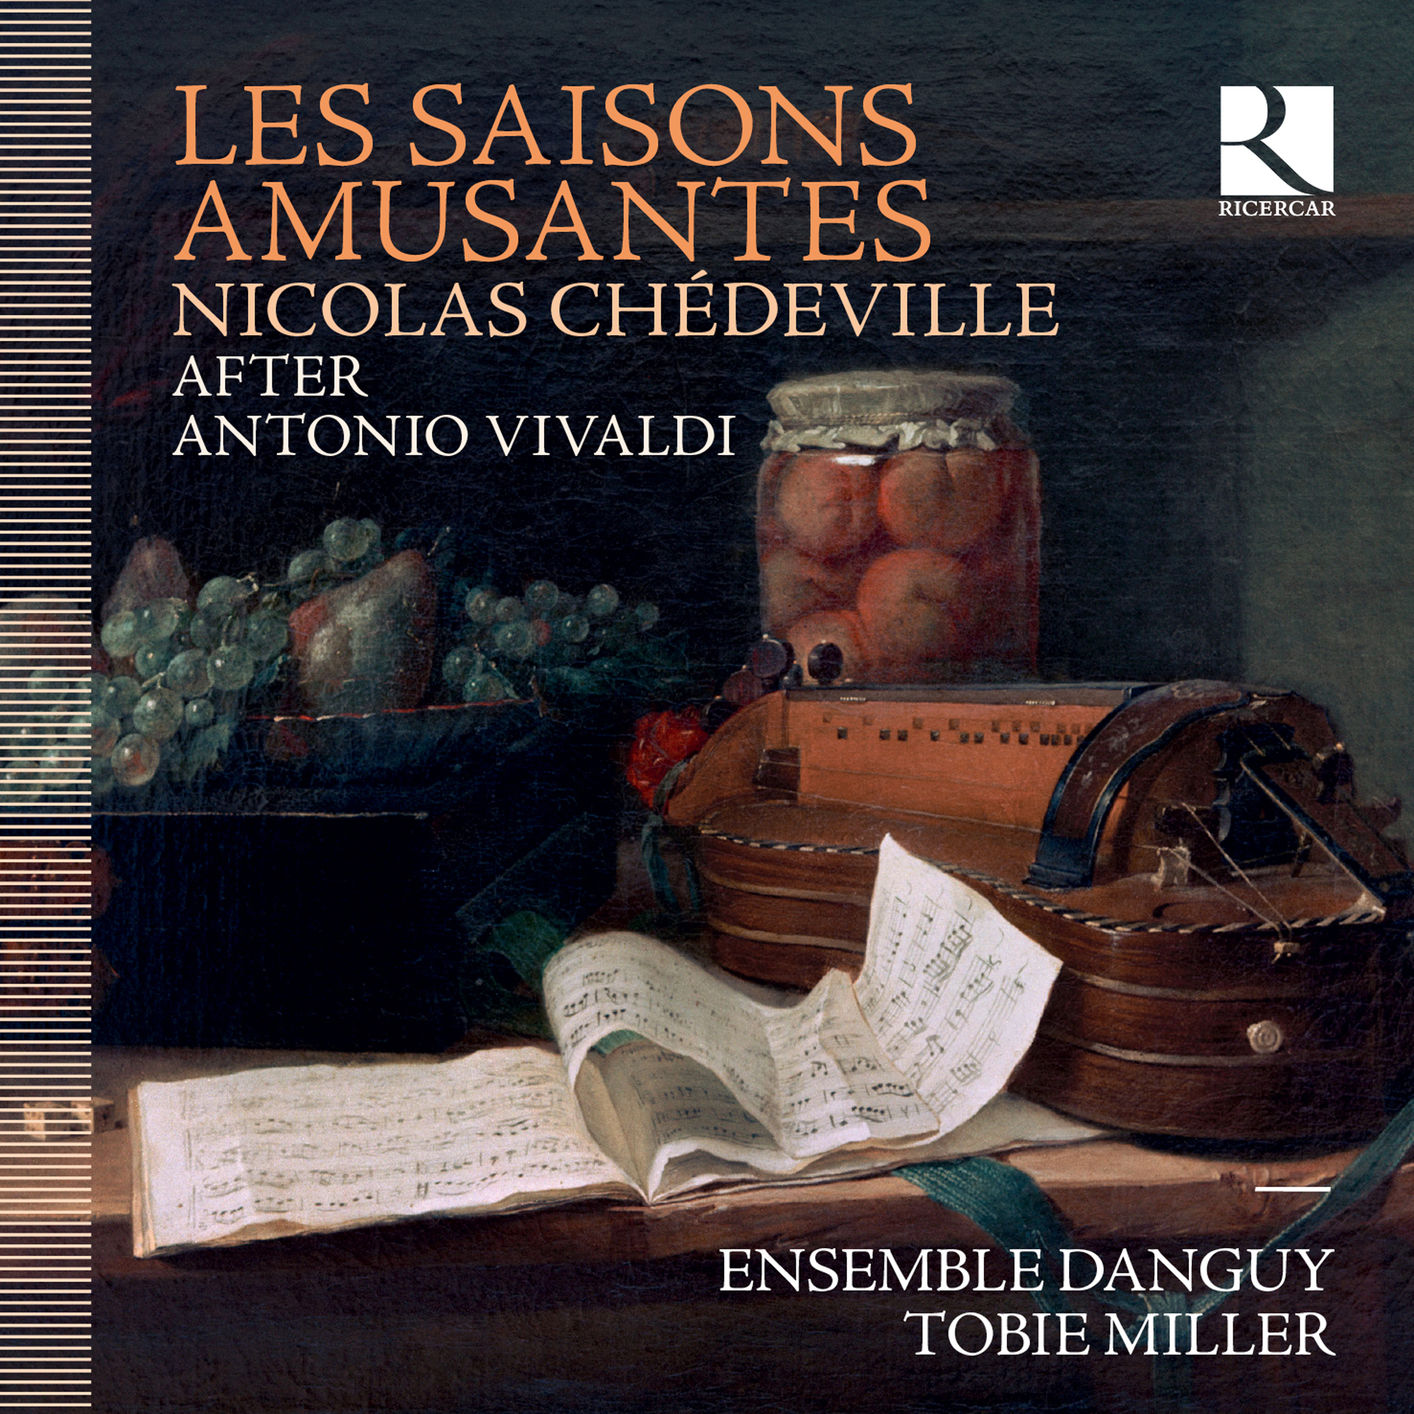 Ensemble Danguy & Tobie Miller - Chedeville: Les saisons amusantes (D’apres Antonio Vivaldi) (2019) [FLAC 24bit/96kHz]